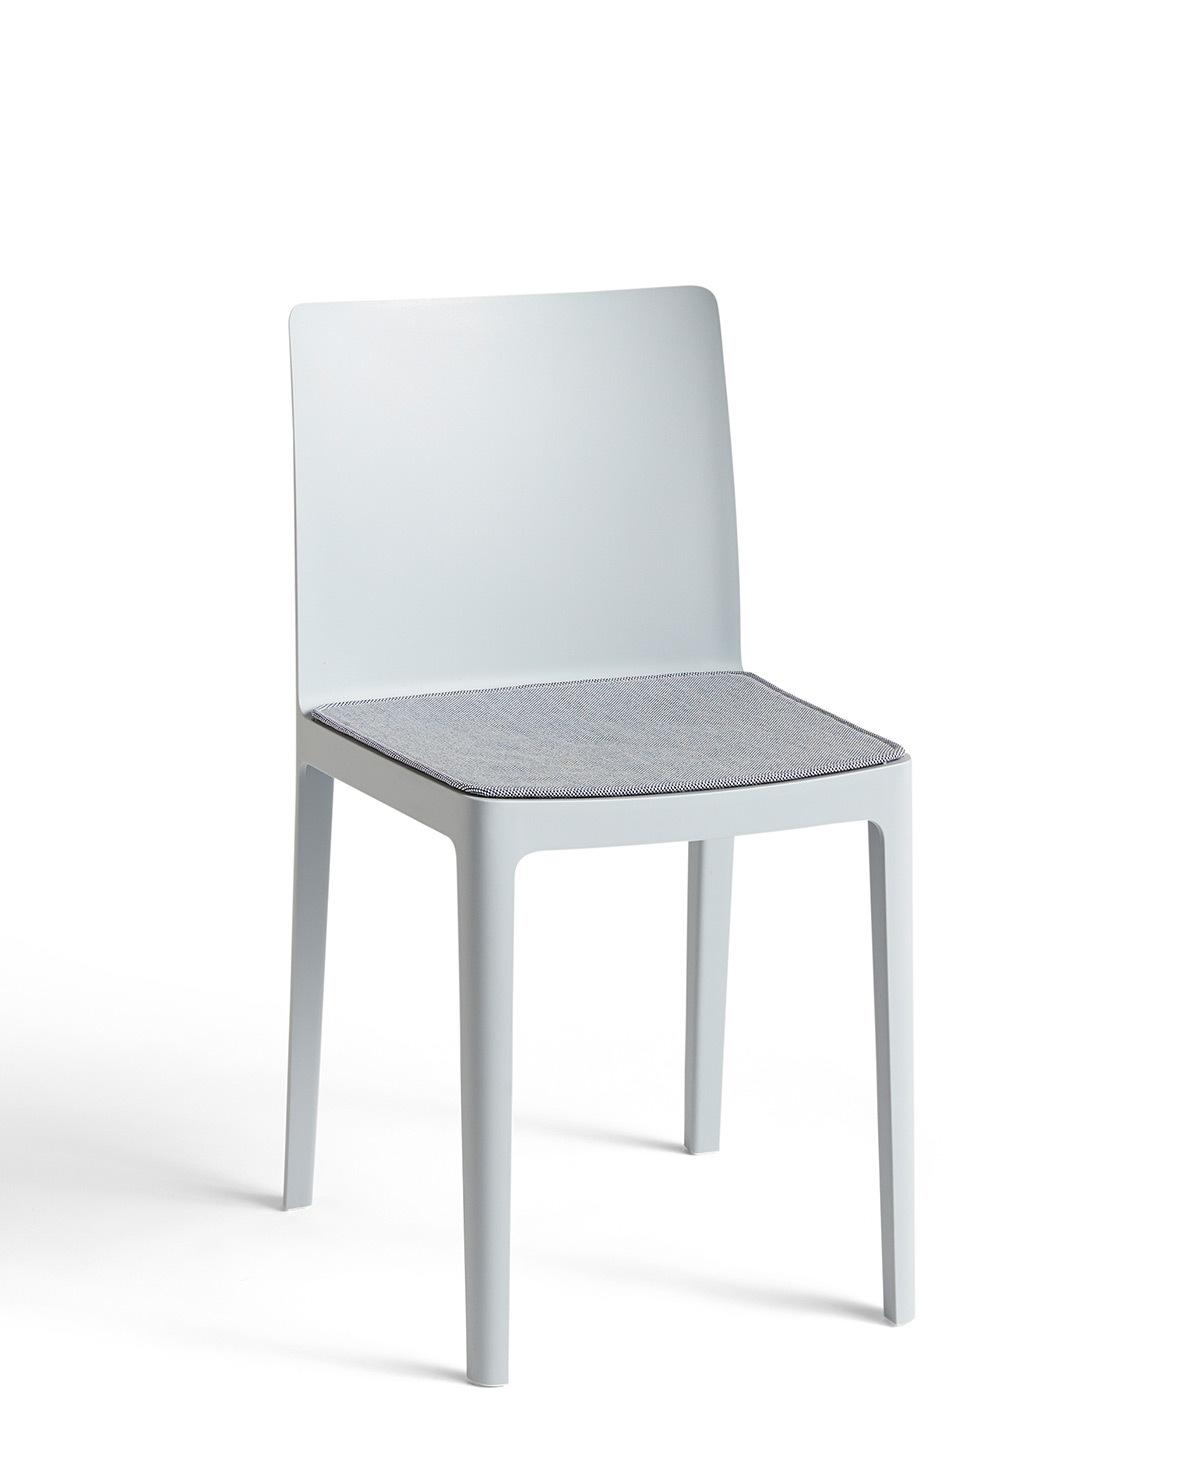 Sitzkissen Seat Pad für Stuhl Elementaire Outdoor One Size